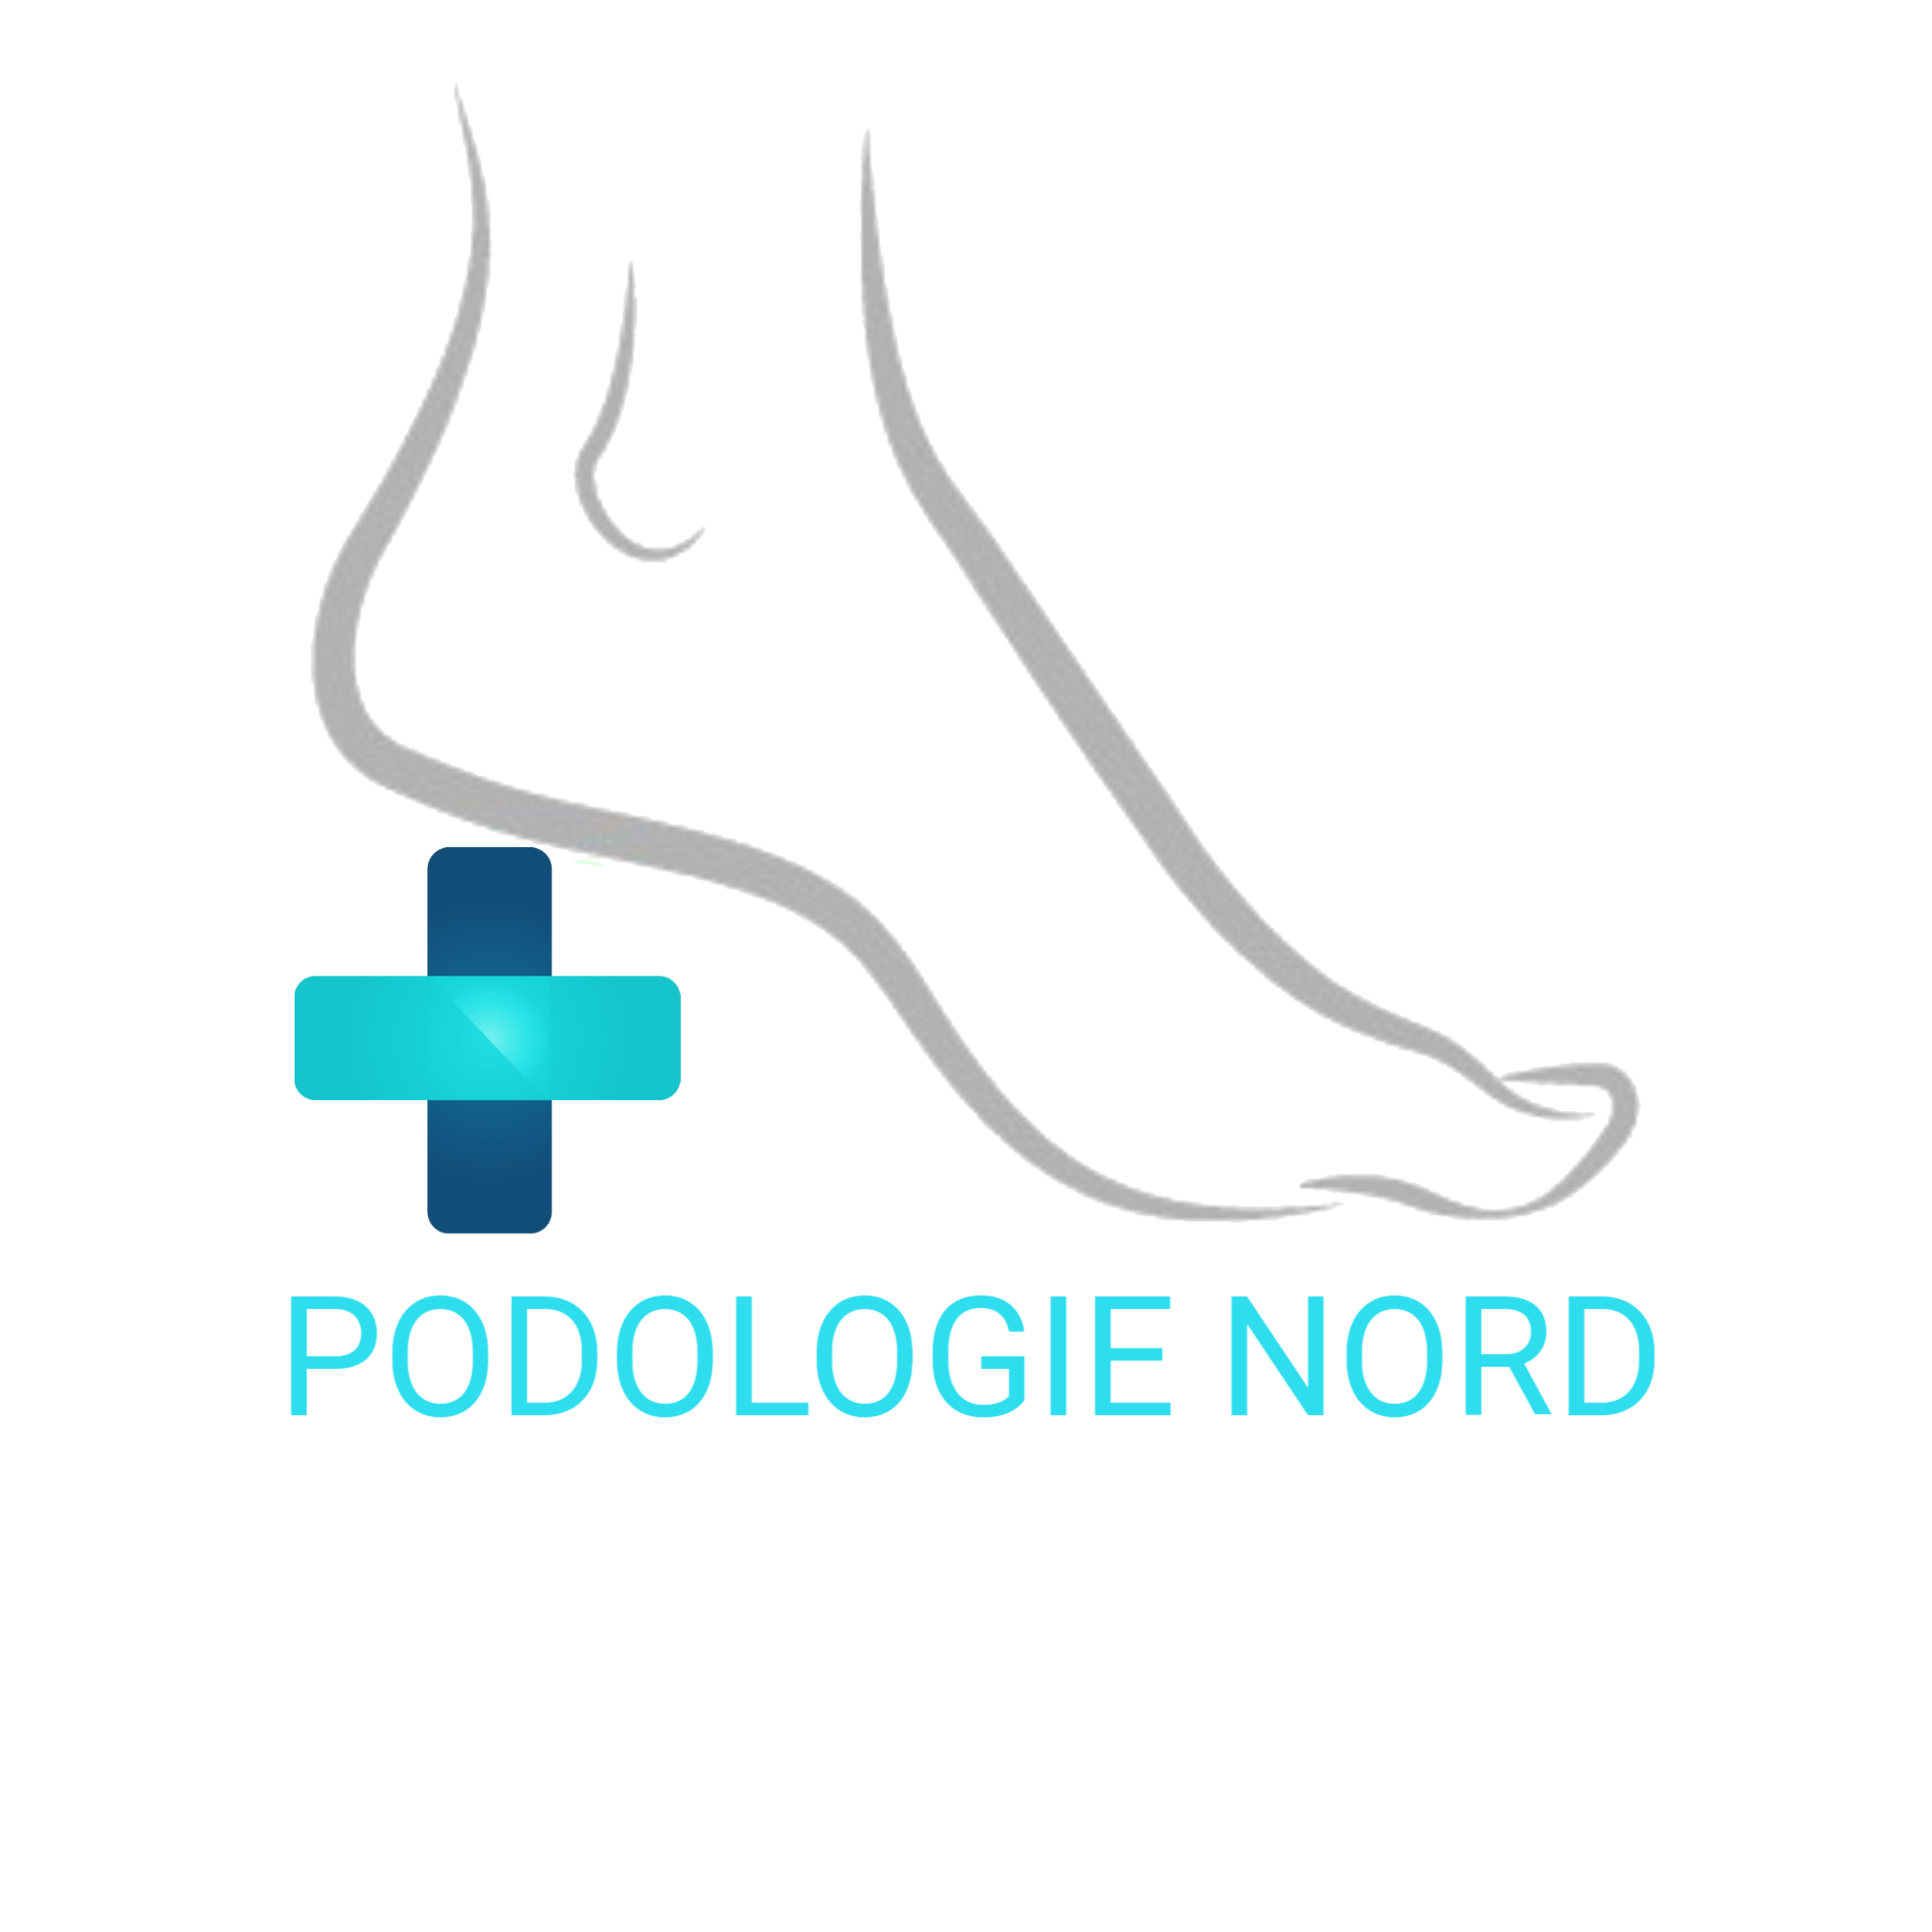 (c) Podologie-nord.net